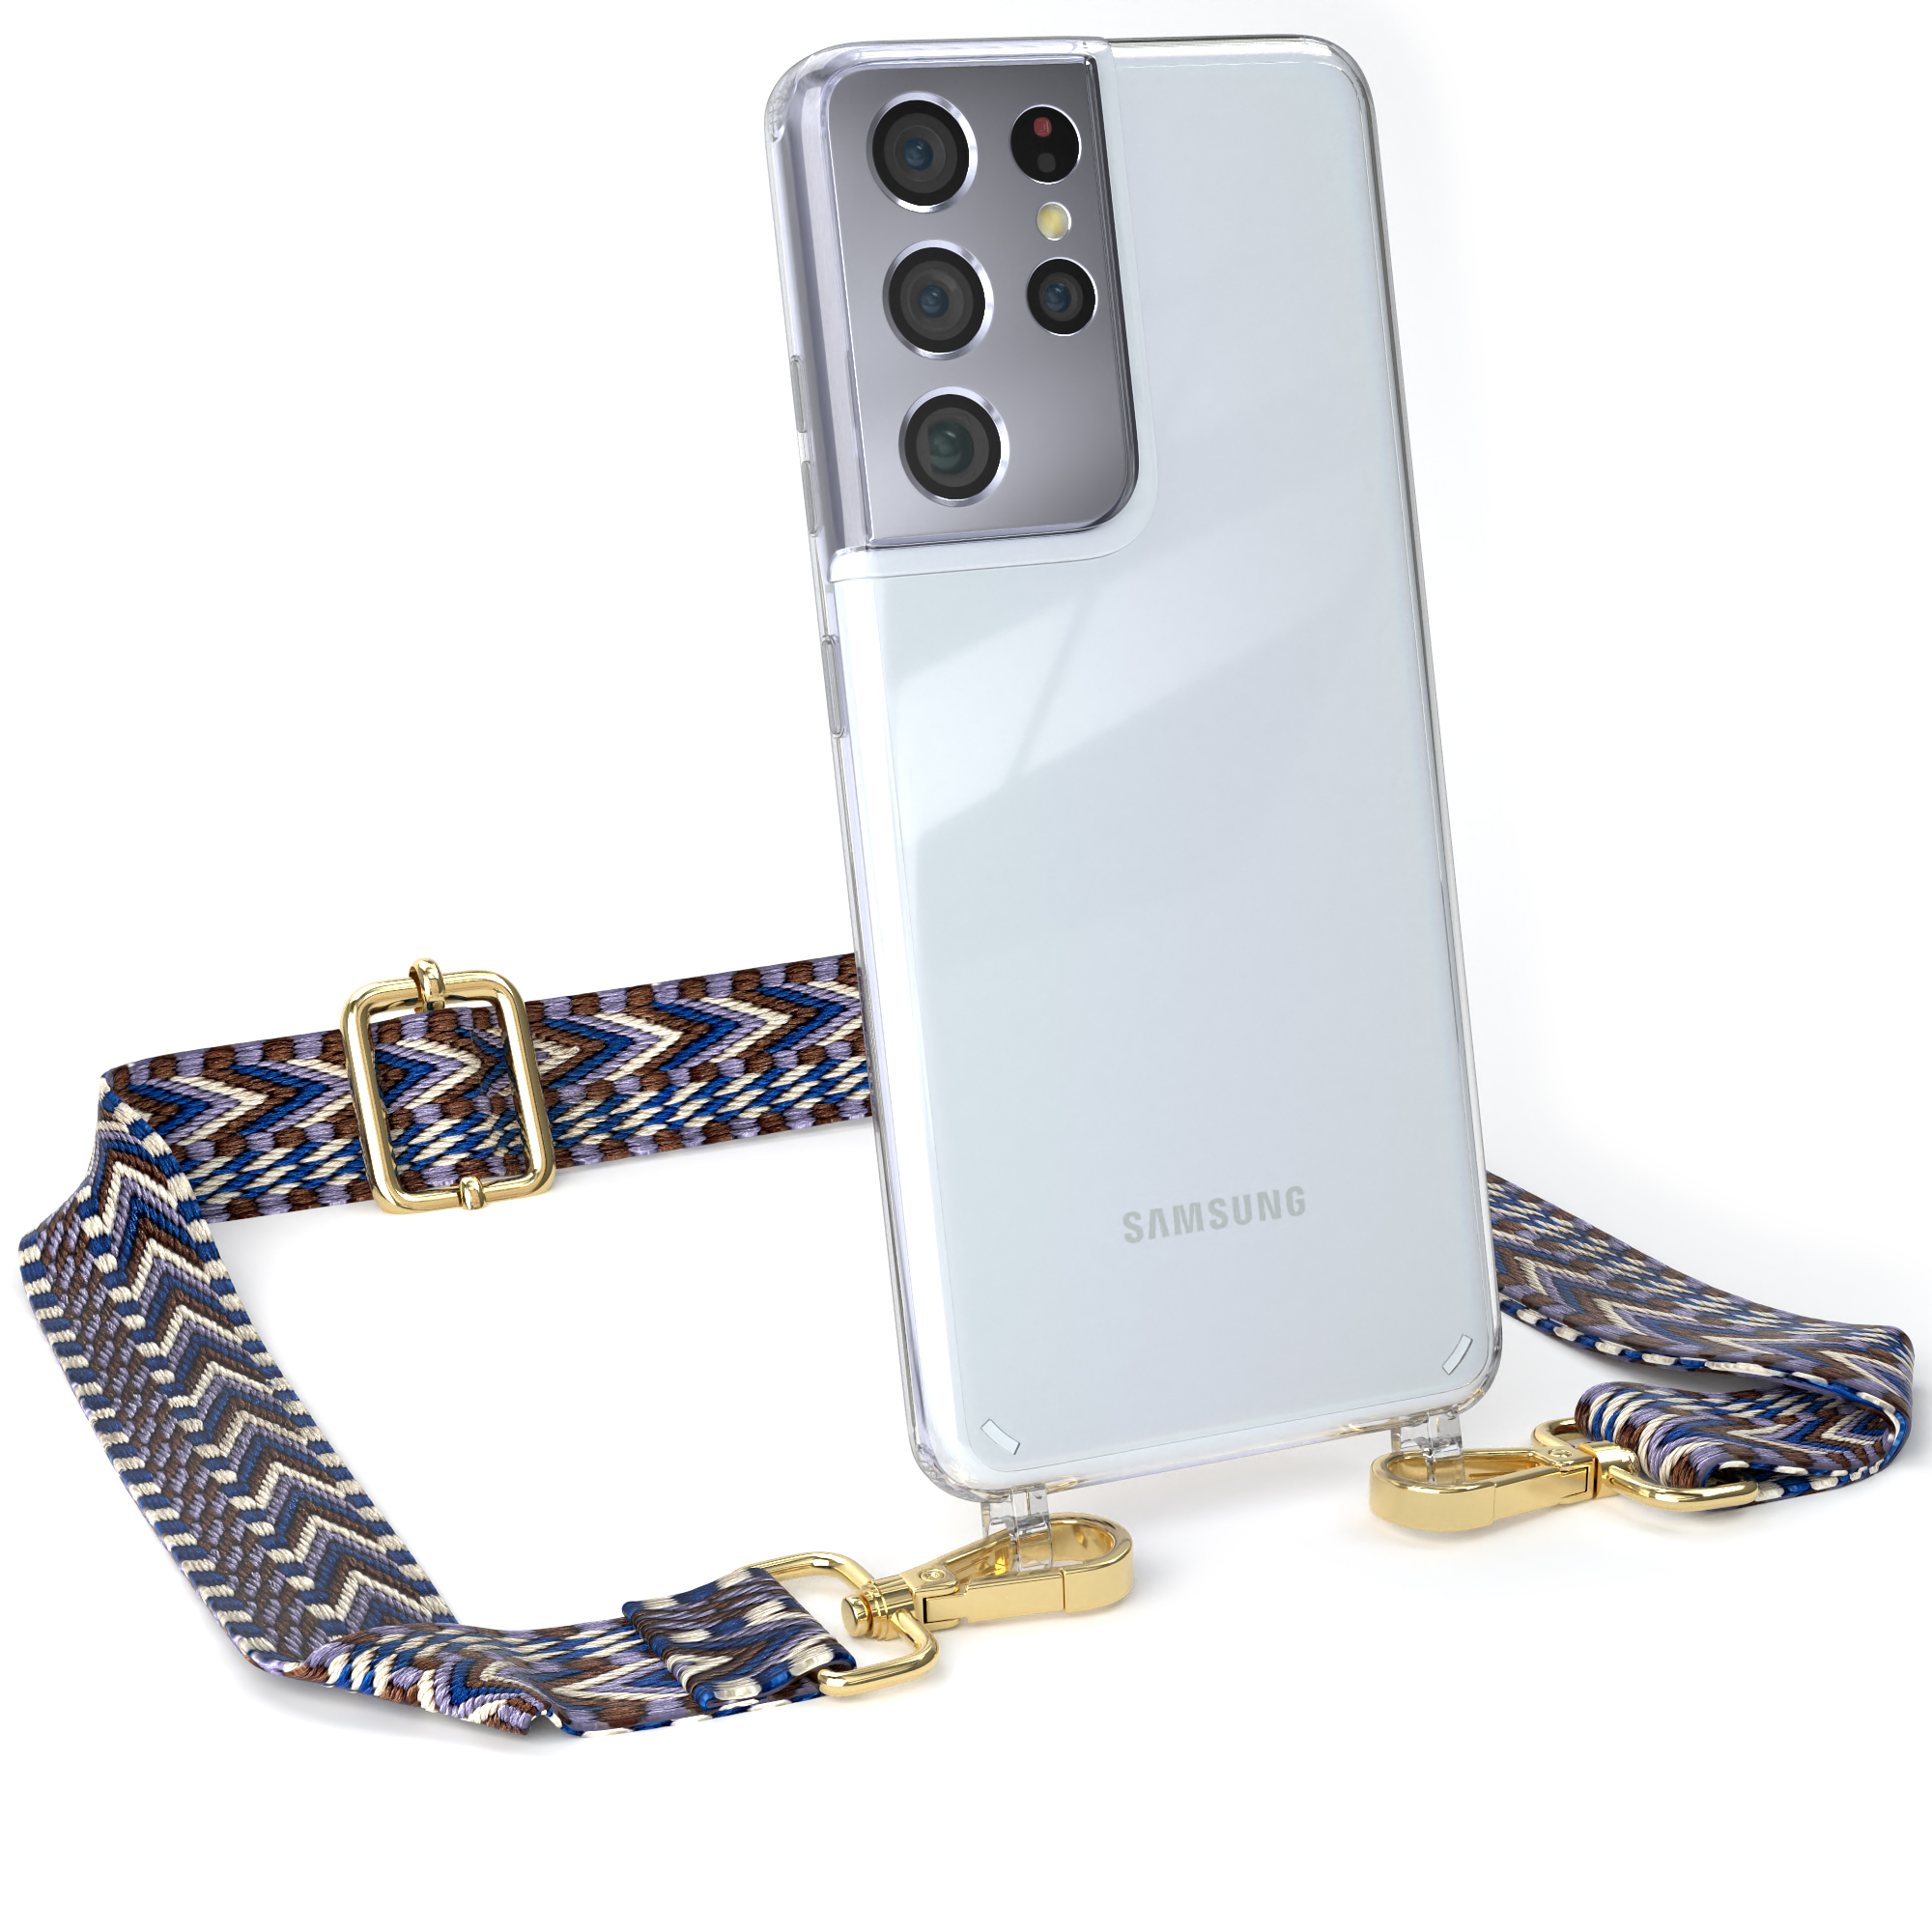 S21 Blau Transparente Ultra / Samsung, CASE Handyhülle EAZY Umhängetasche, Boho Kordel 5G, Galaxy Weiß Style, mit